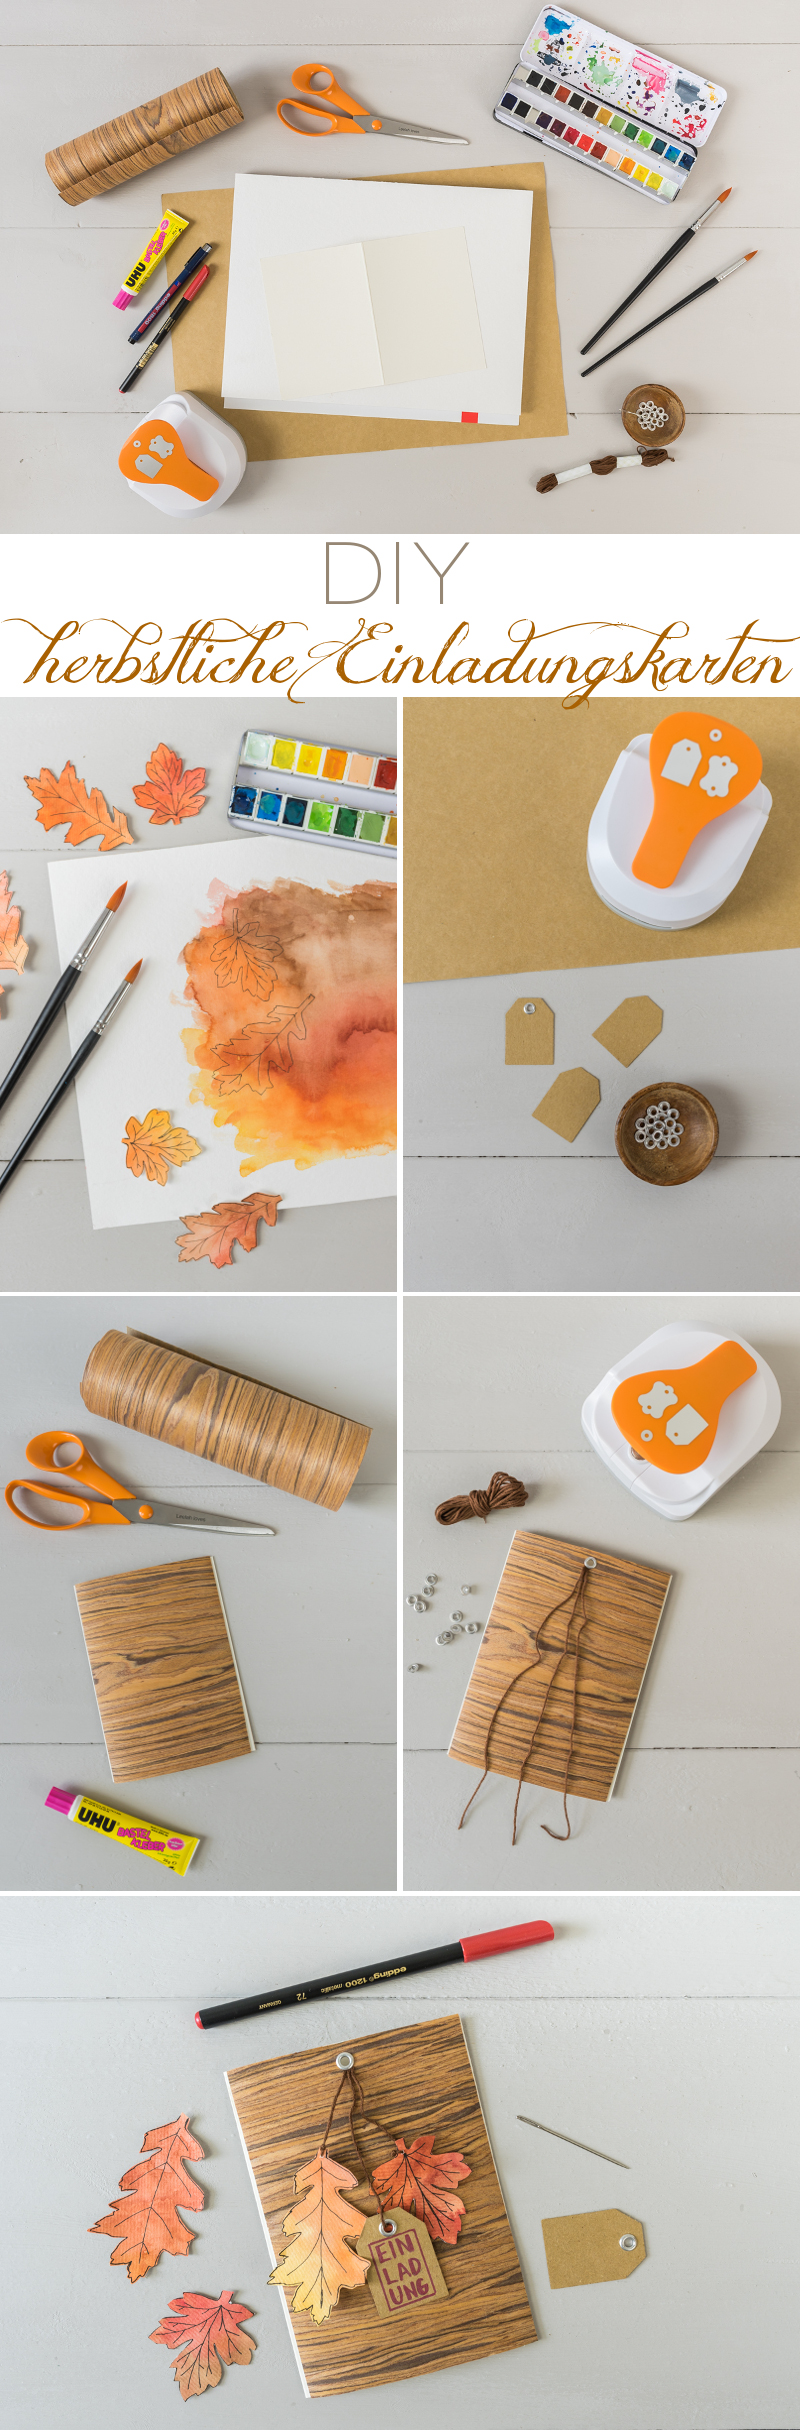 Anleitung für eine selbstgemachte DIY Einladungskarte aus Papier und Holzstoff als kreative Einladung zum Geburtstag im Herbst mit Aquarell Blättern